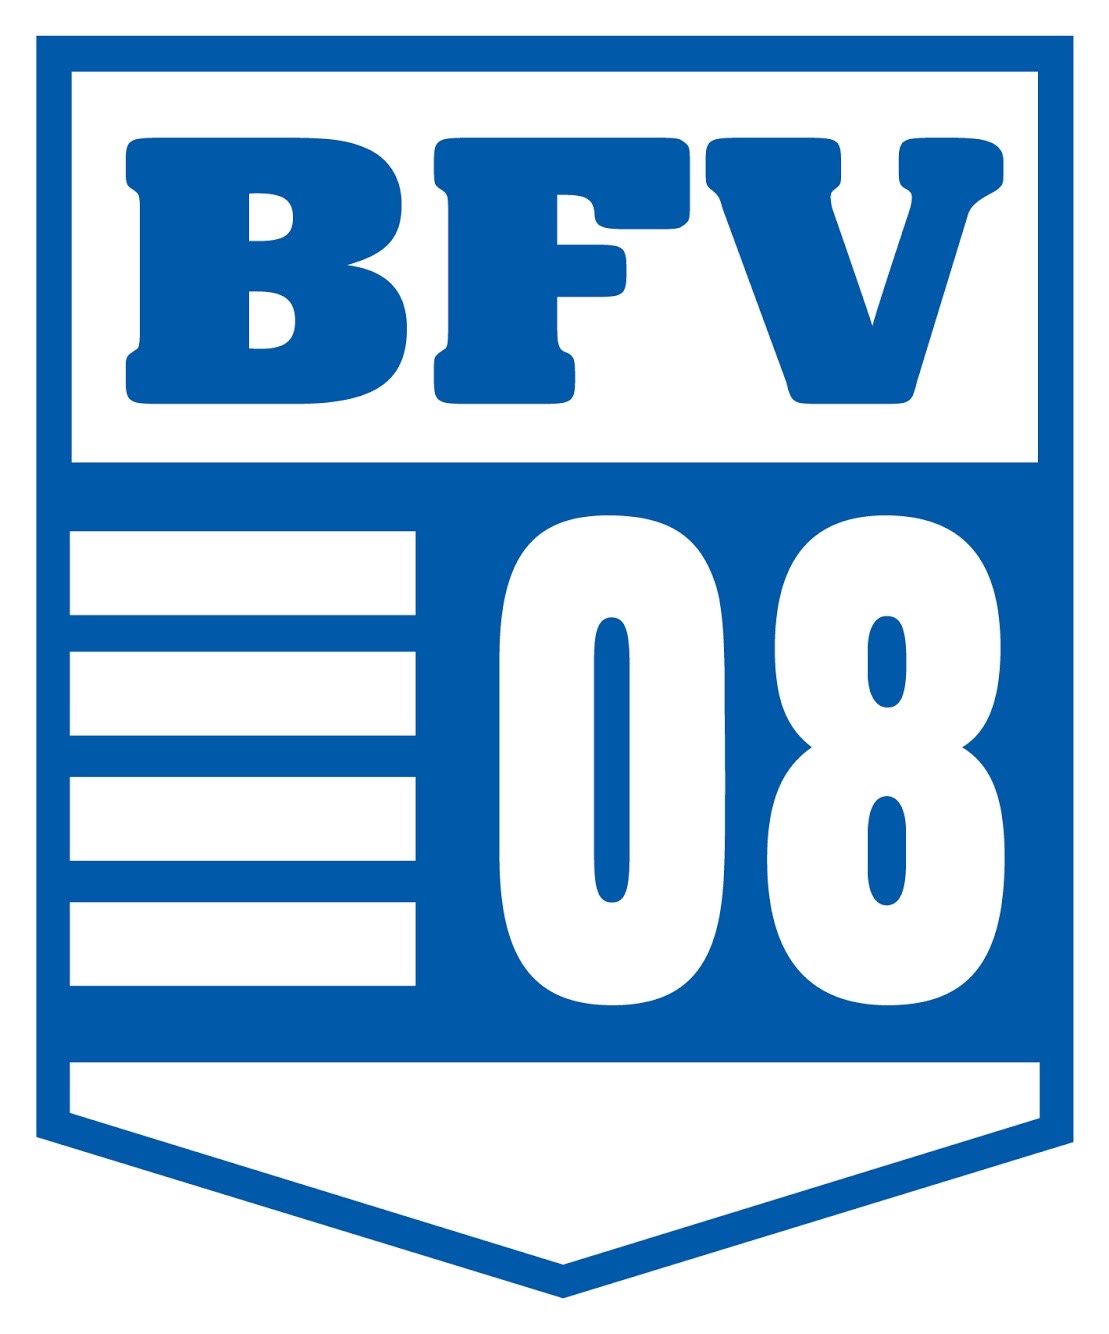 Bischofswerdaer FV 08